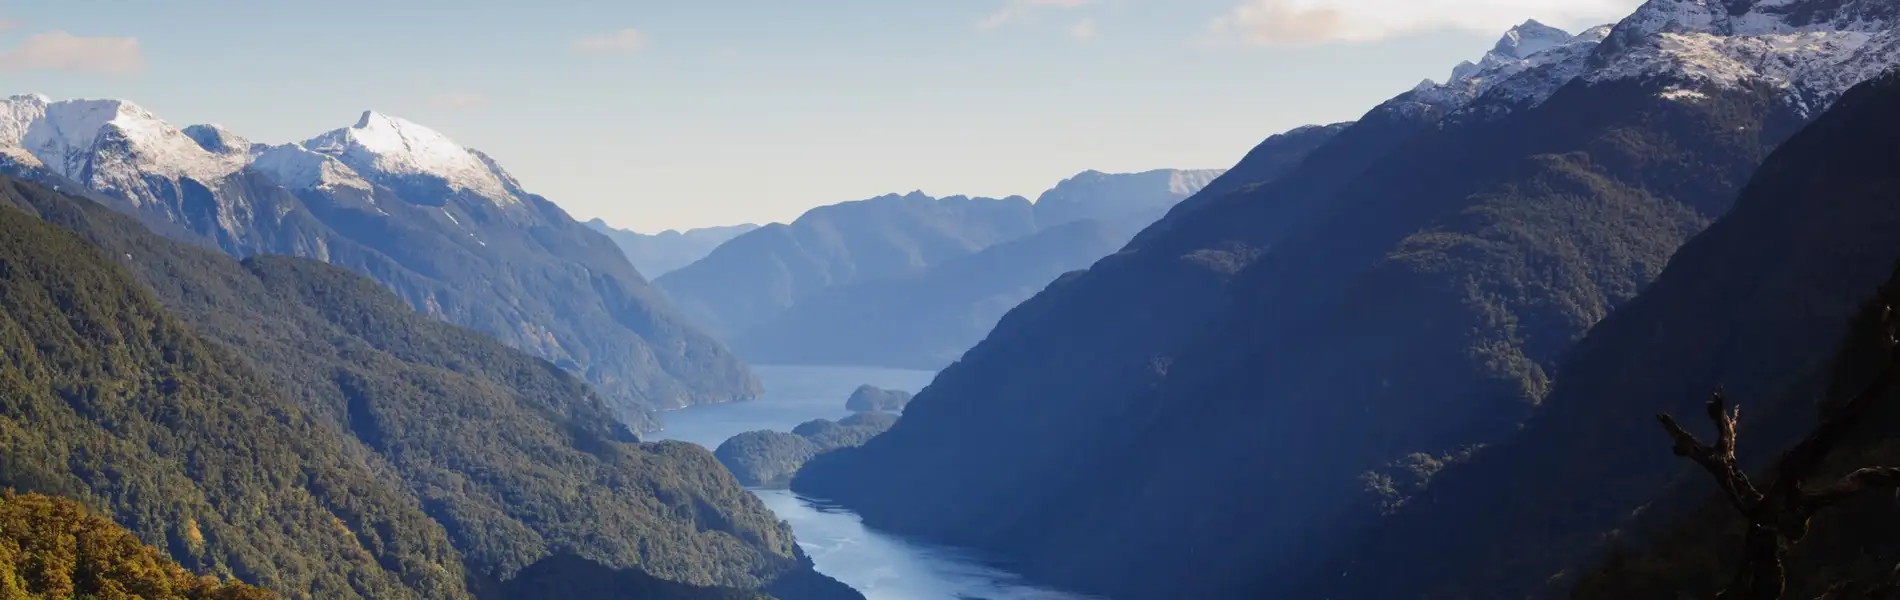 Doubtful Sound (New Zealand)